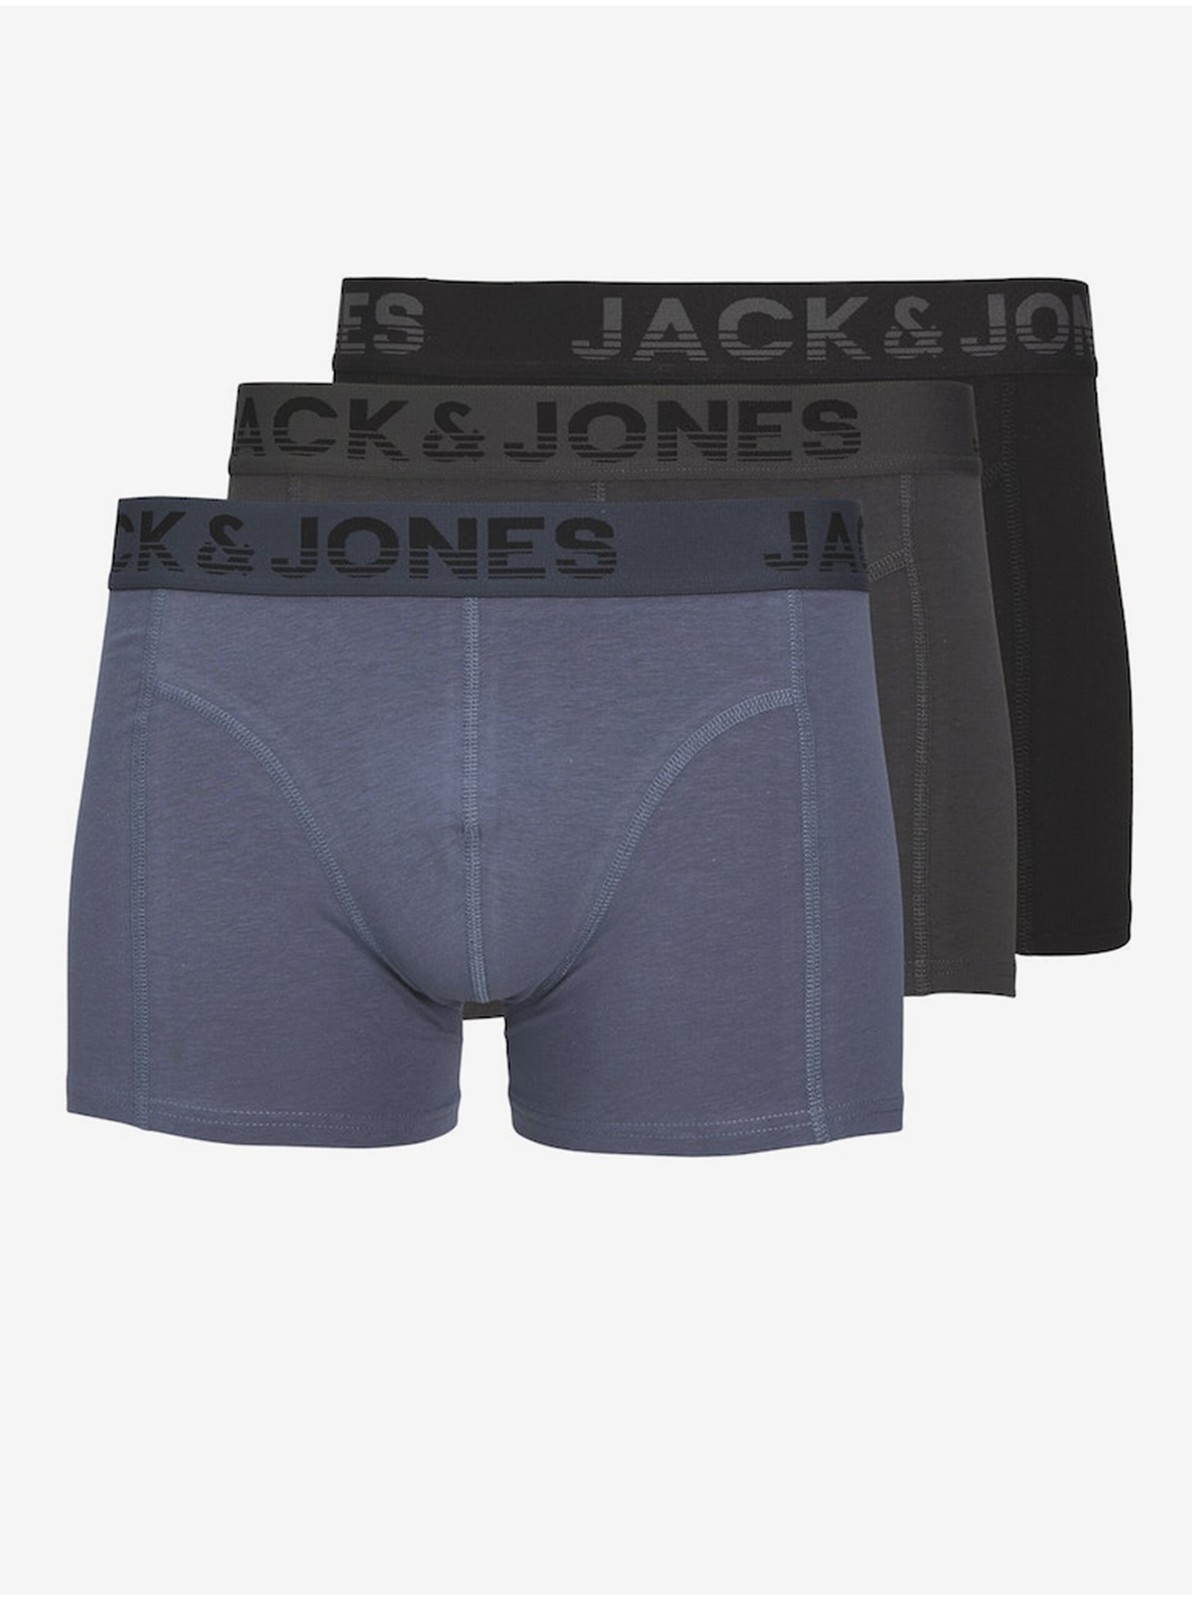 Sada tří pánských boxerek v černé, šedé a modré barvě Jack & Jones - Pánské